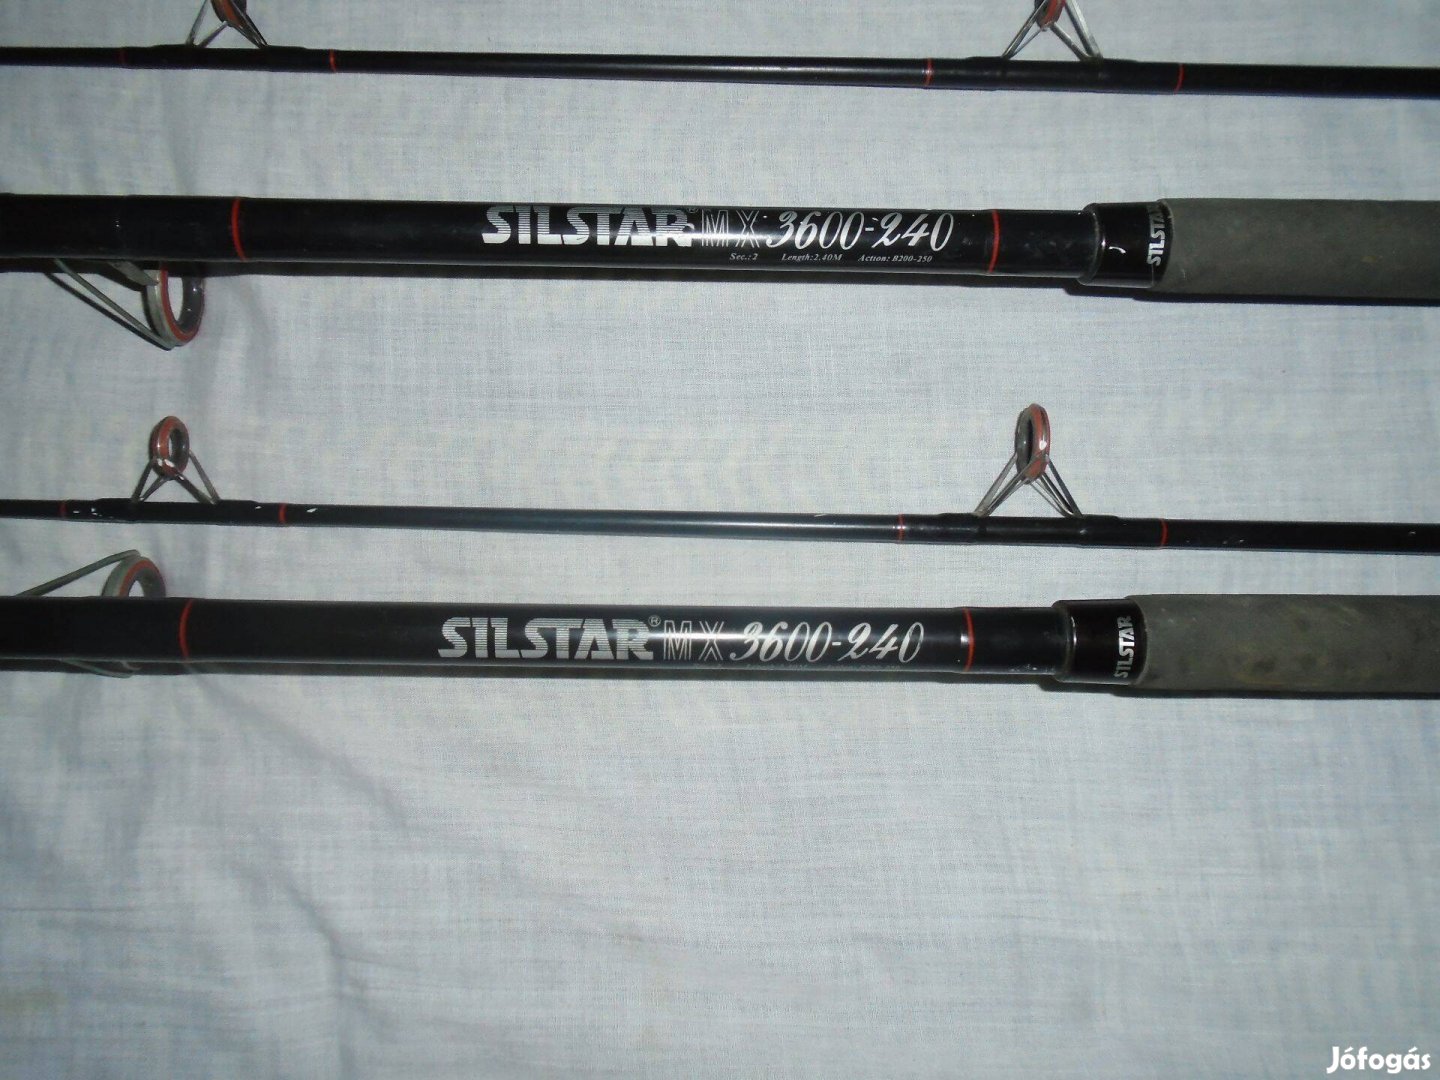 Silstar MX 3600-240 horgászbot párban